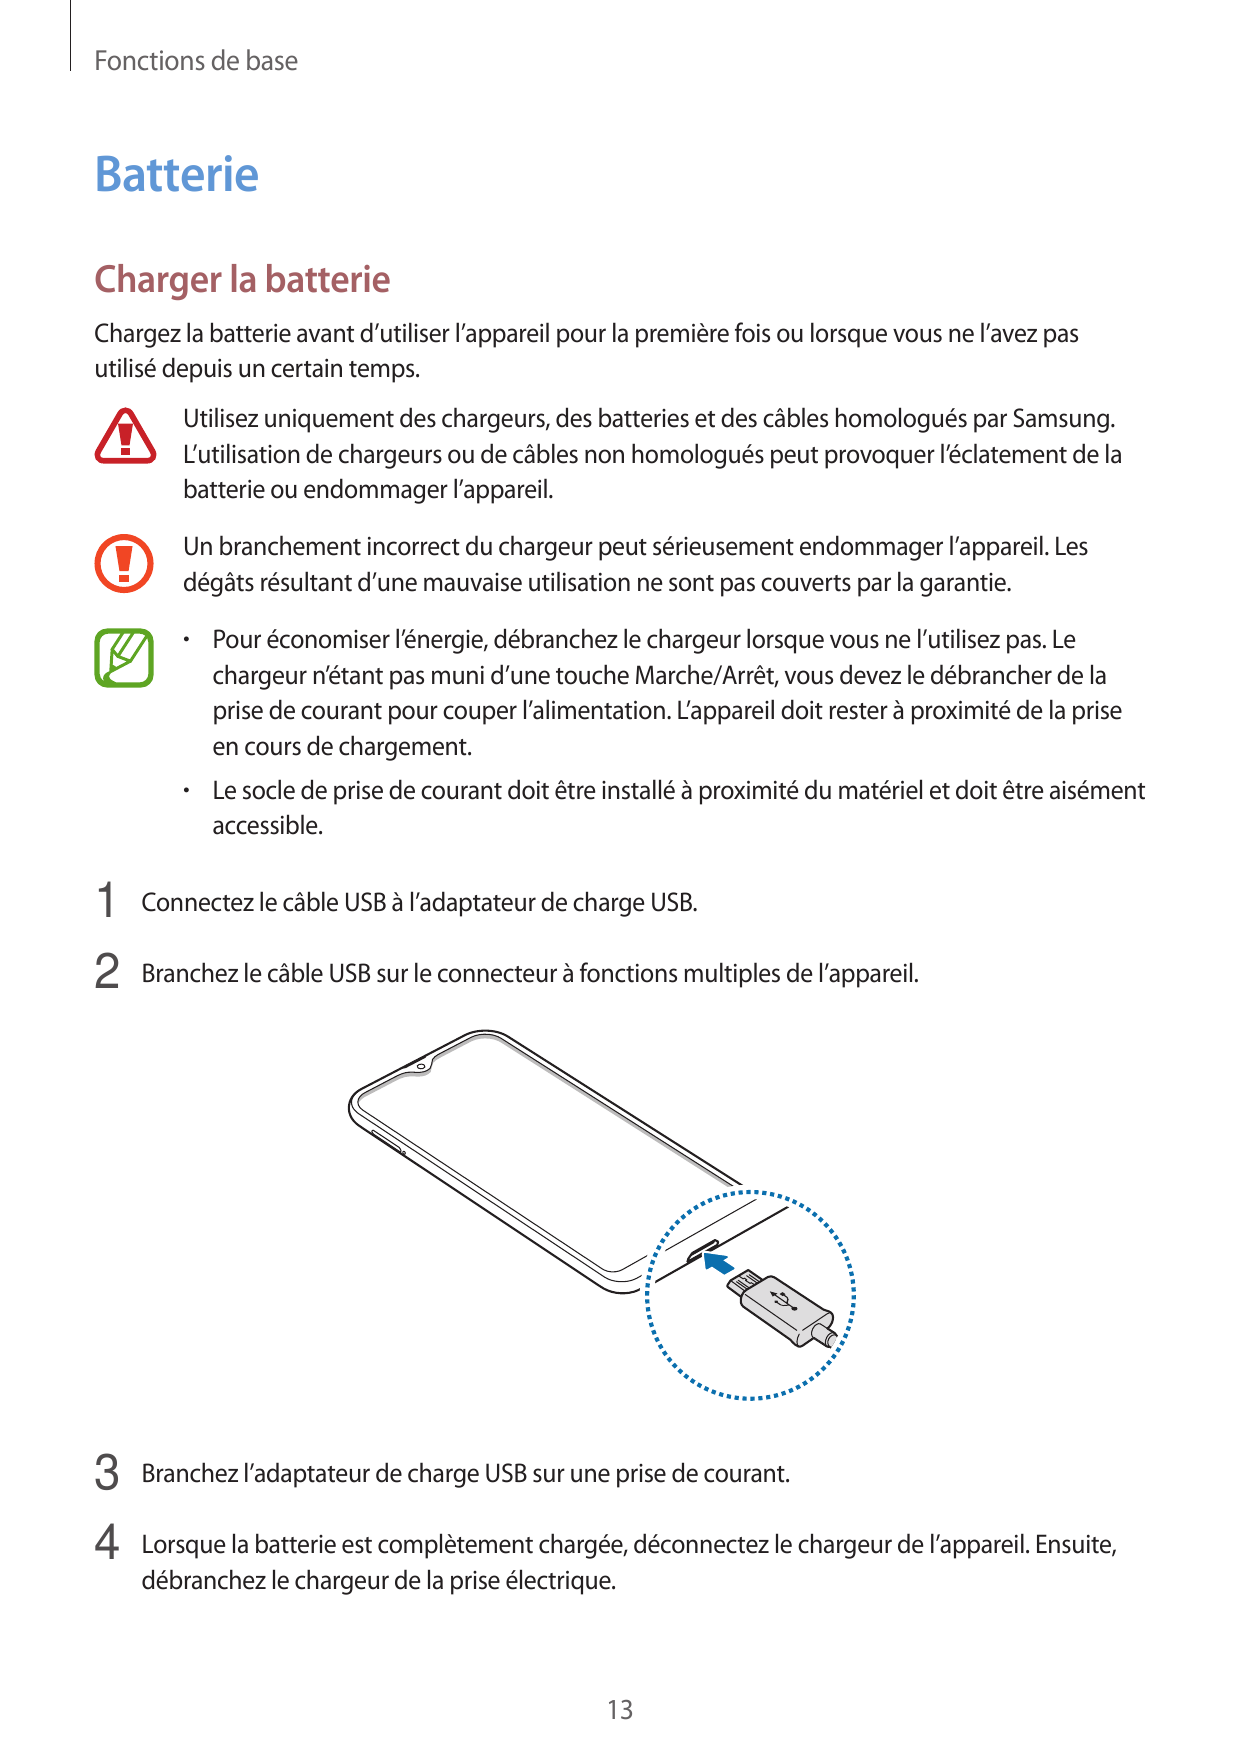 Fonctions de baseBatterieCharger la batterieChargez la batterie avant d’utiliser l’appareil pour la première fois ou lorsque vou